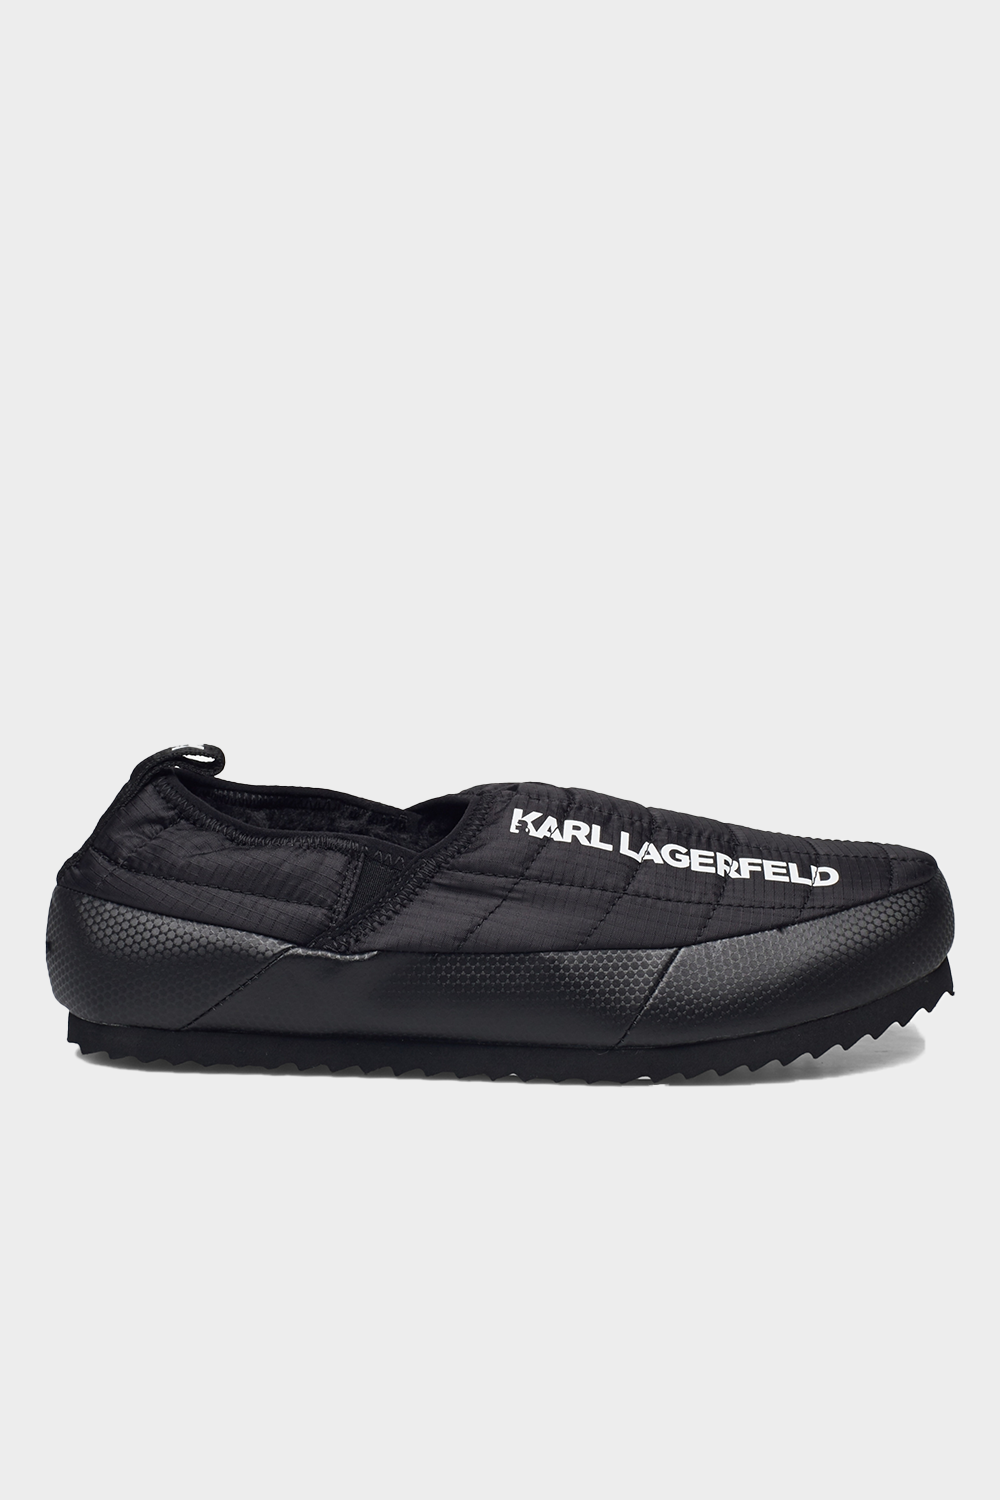 נעלי בית לגברים לוגו KARL LAGERFELD Vendome online | ונדום .